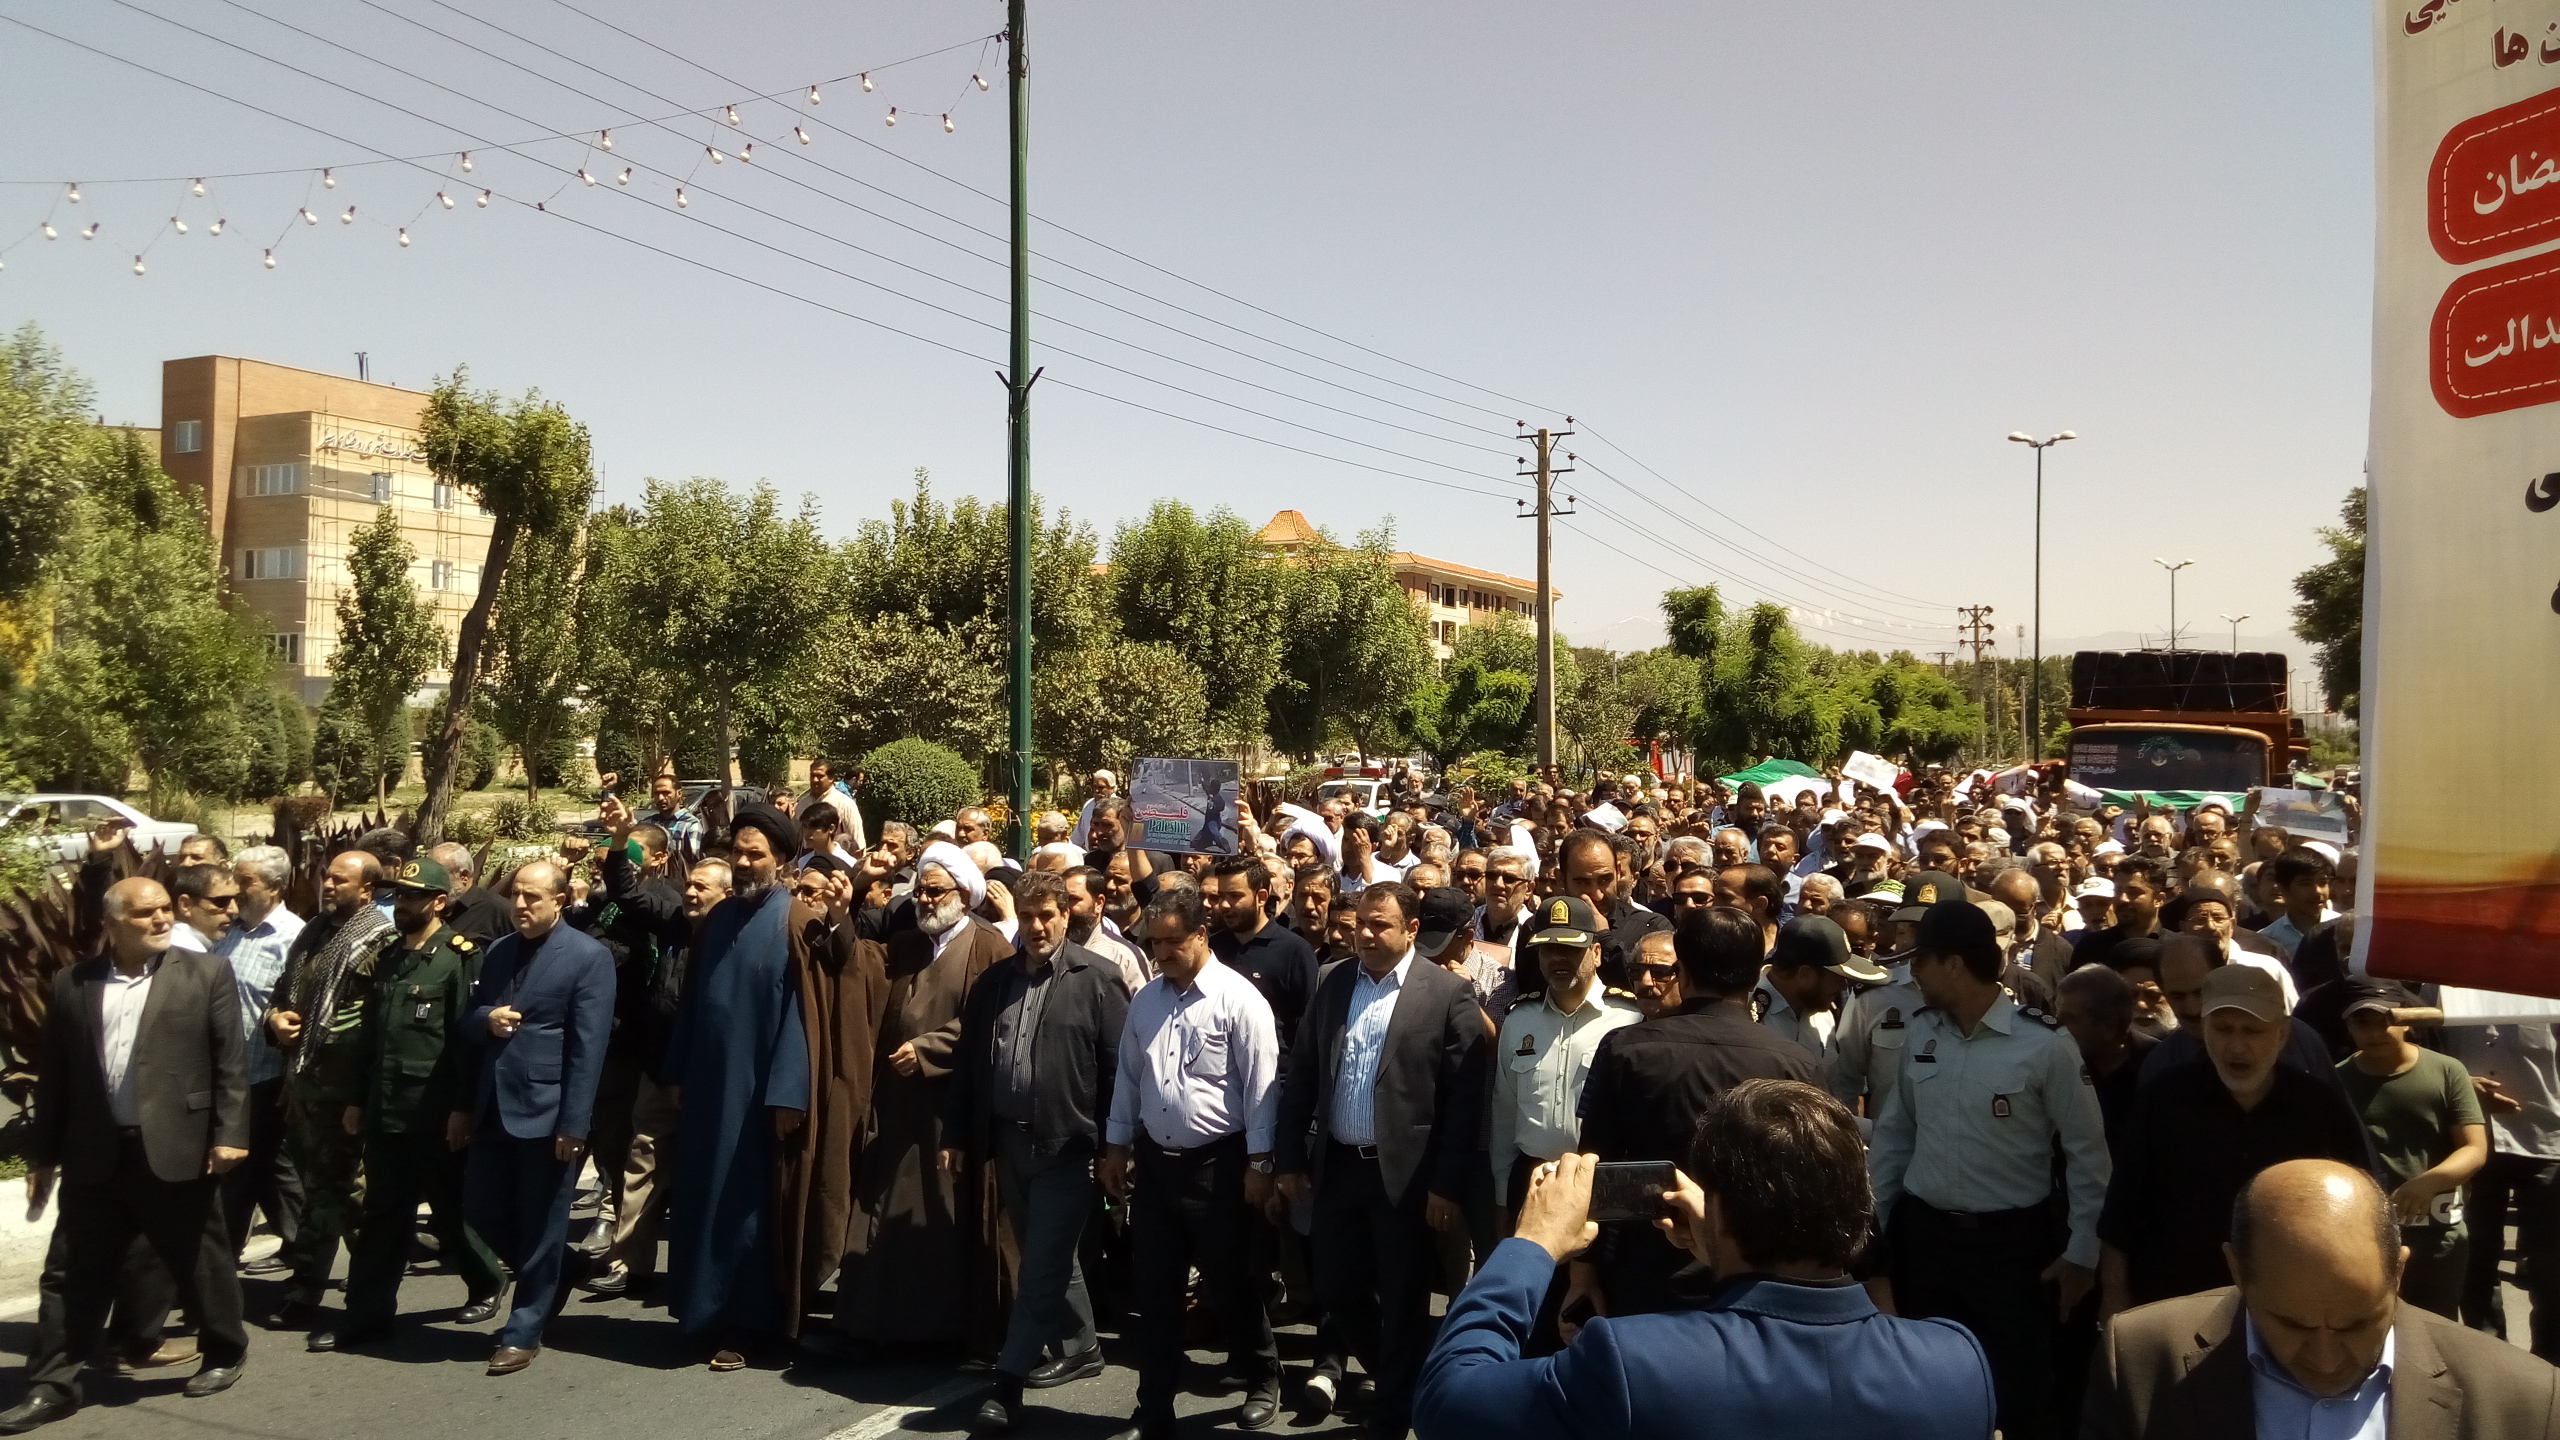 راهپیمایی دشمن شکن روز قدس مهرشهر آغاز شد+عکس